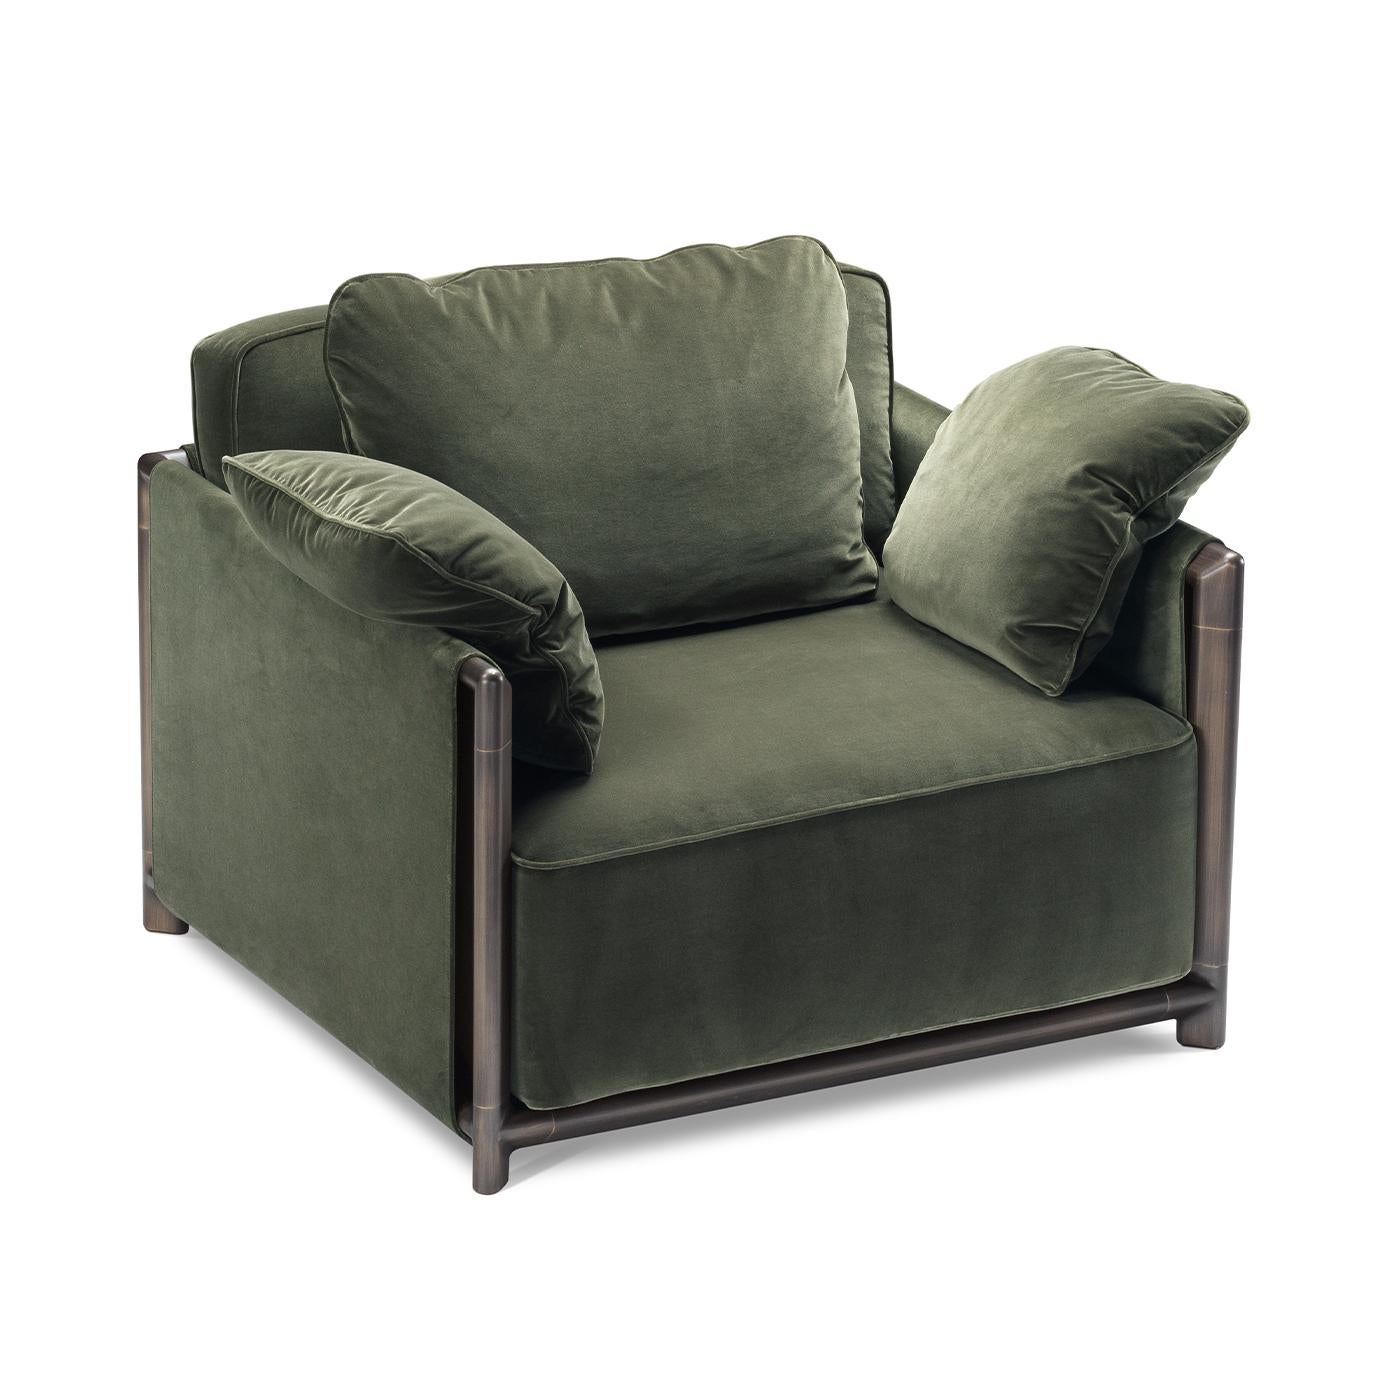 Dieser Sessel ist ideal, um ihn mit seinem Sofapendant zu kombinieren, denn er verbindet klare Linien mit großzügigen Volumina und bietet so einen ausgezeichneten Komfort, ohne dabei auf schlichte Eleganz zu verzichten. Die Sitzfläche, die